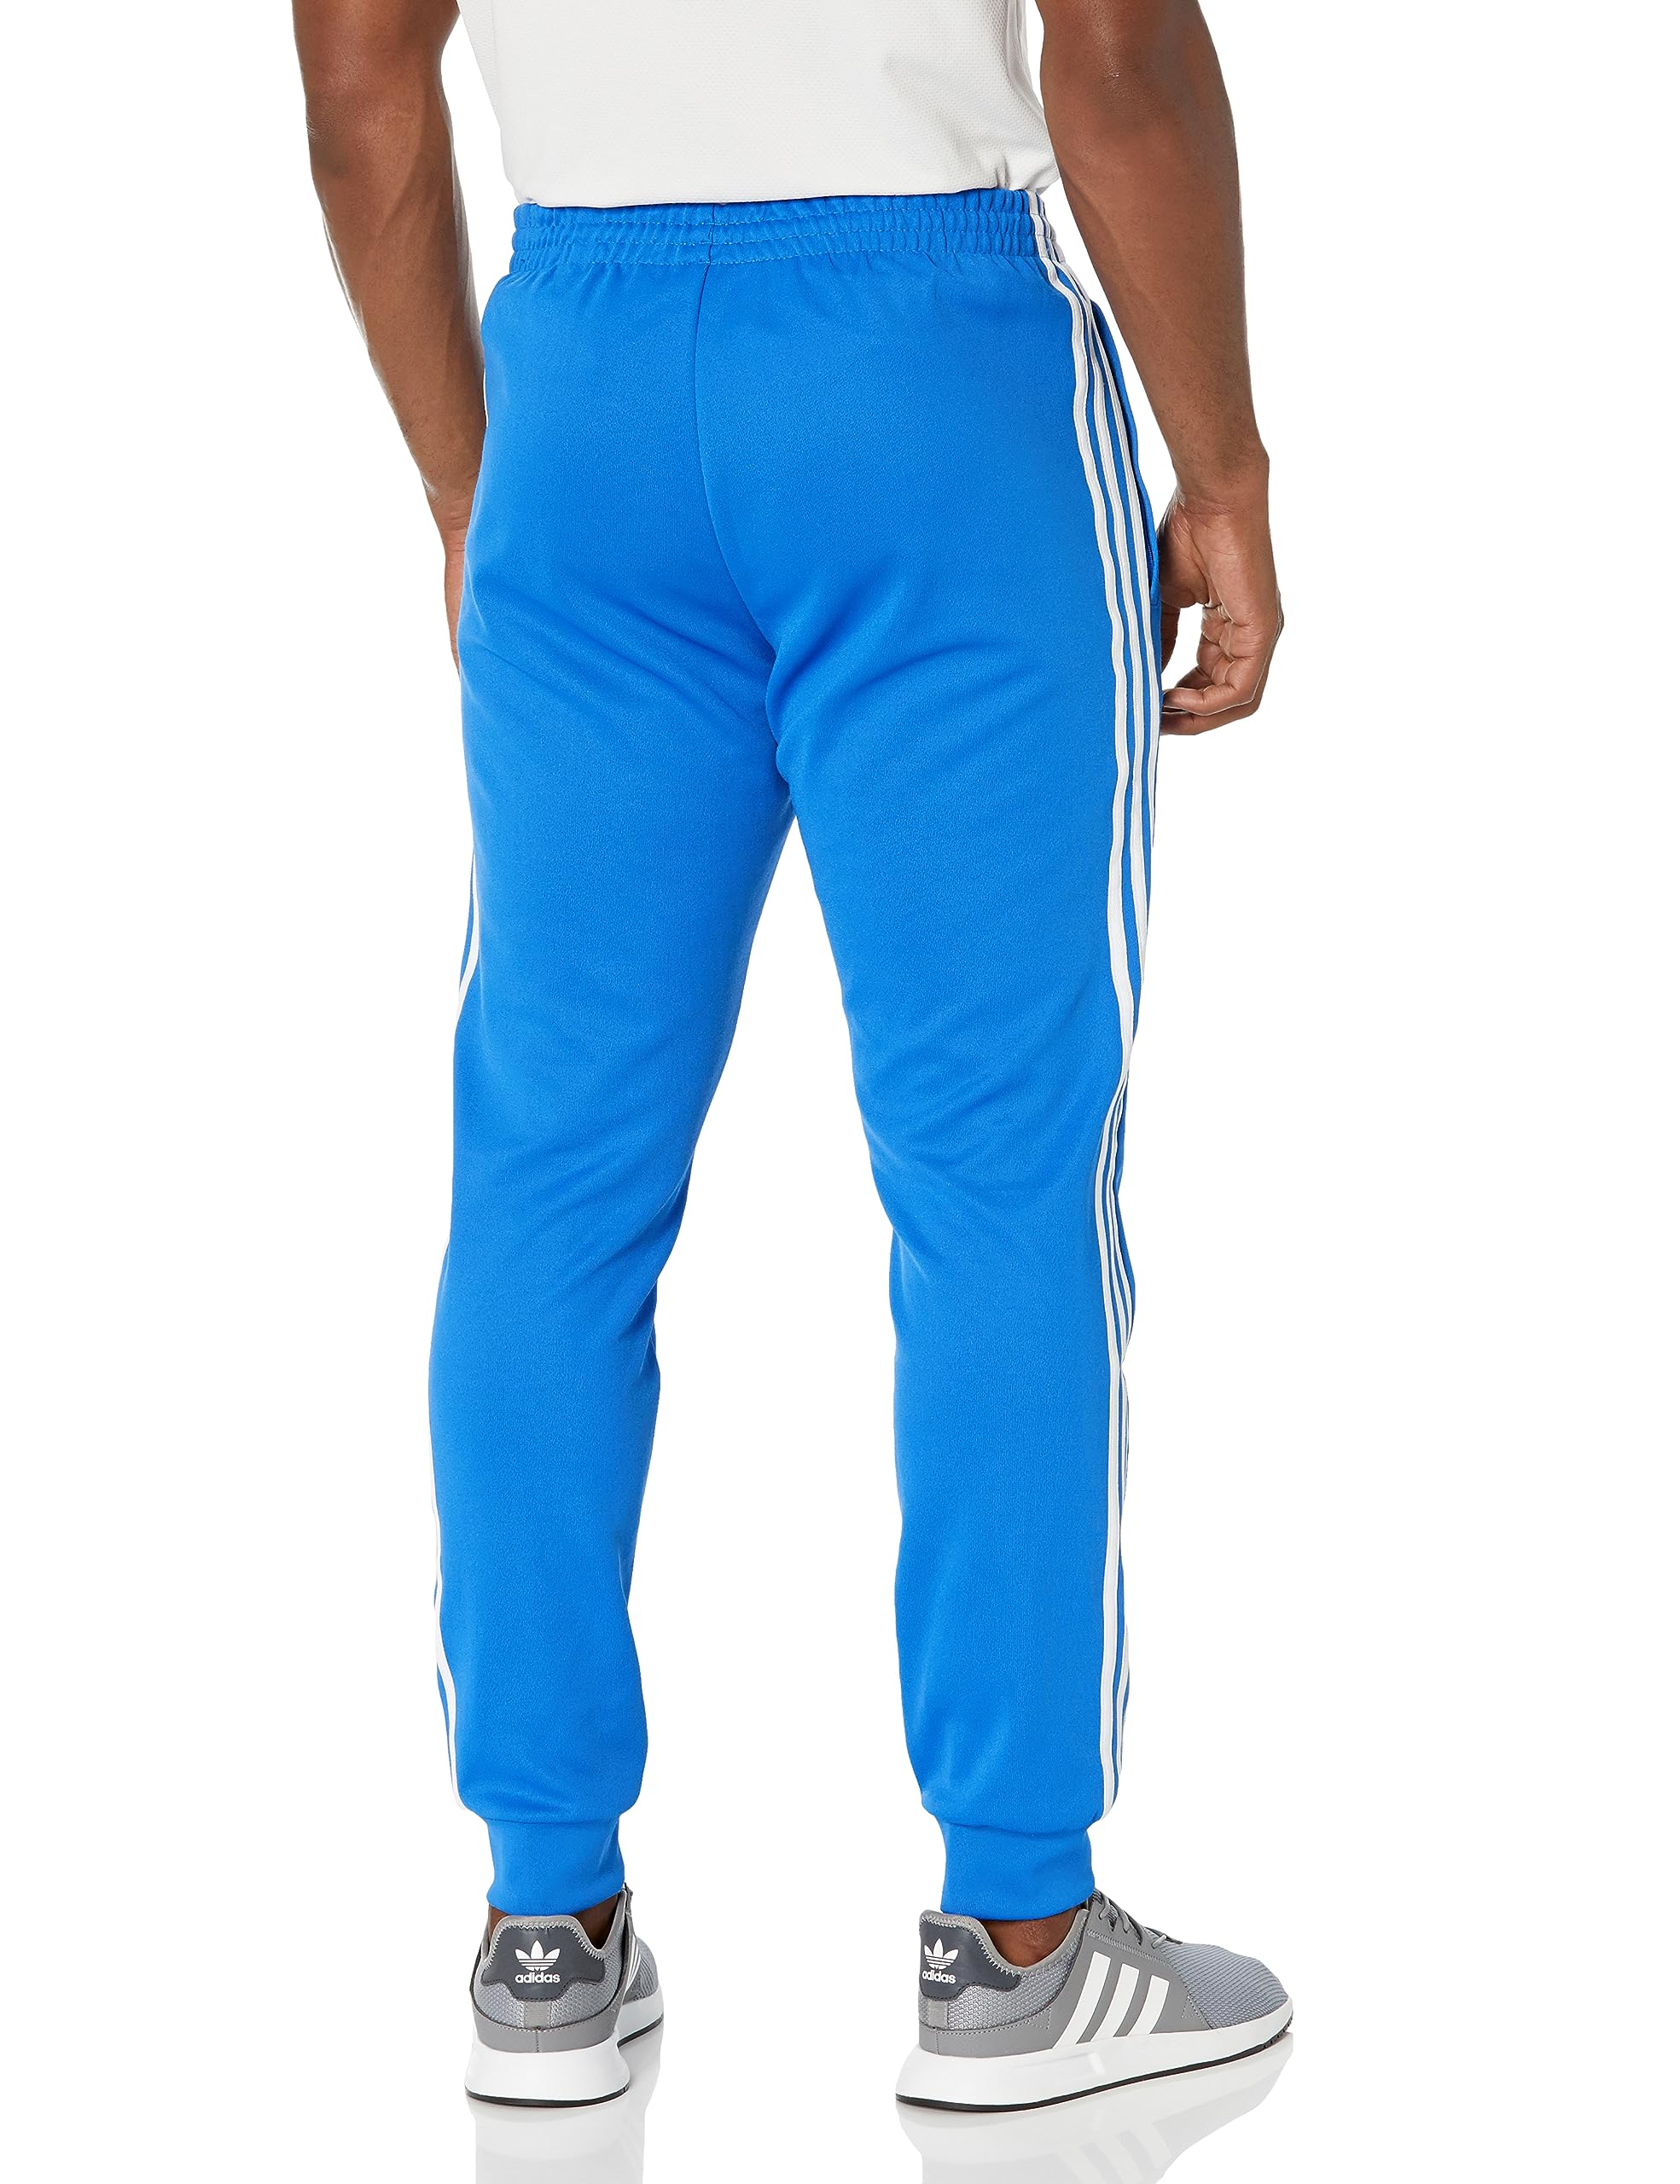 adidas Originals Men's Adicolor Classics Superstar Track Pants, Bluebird/White, Large